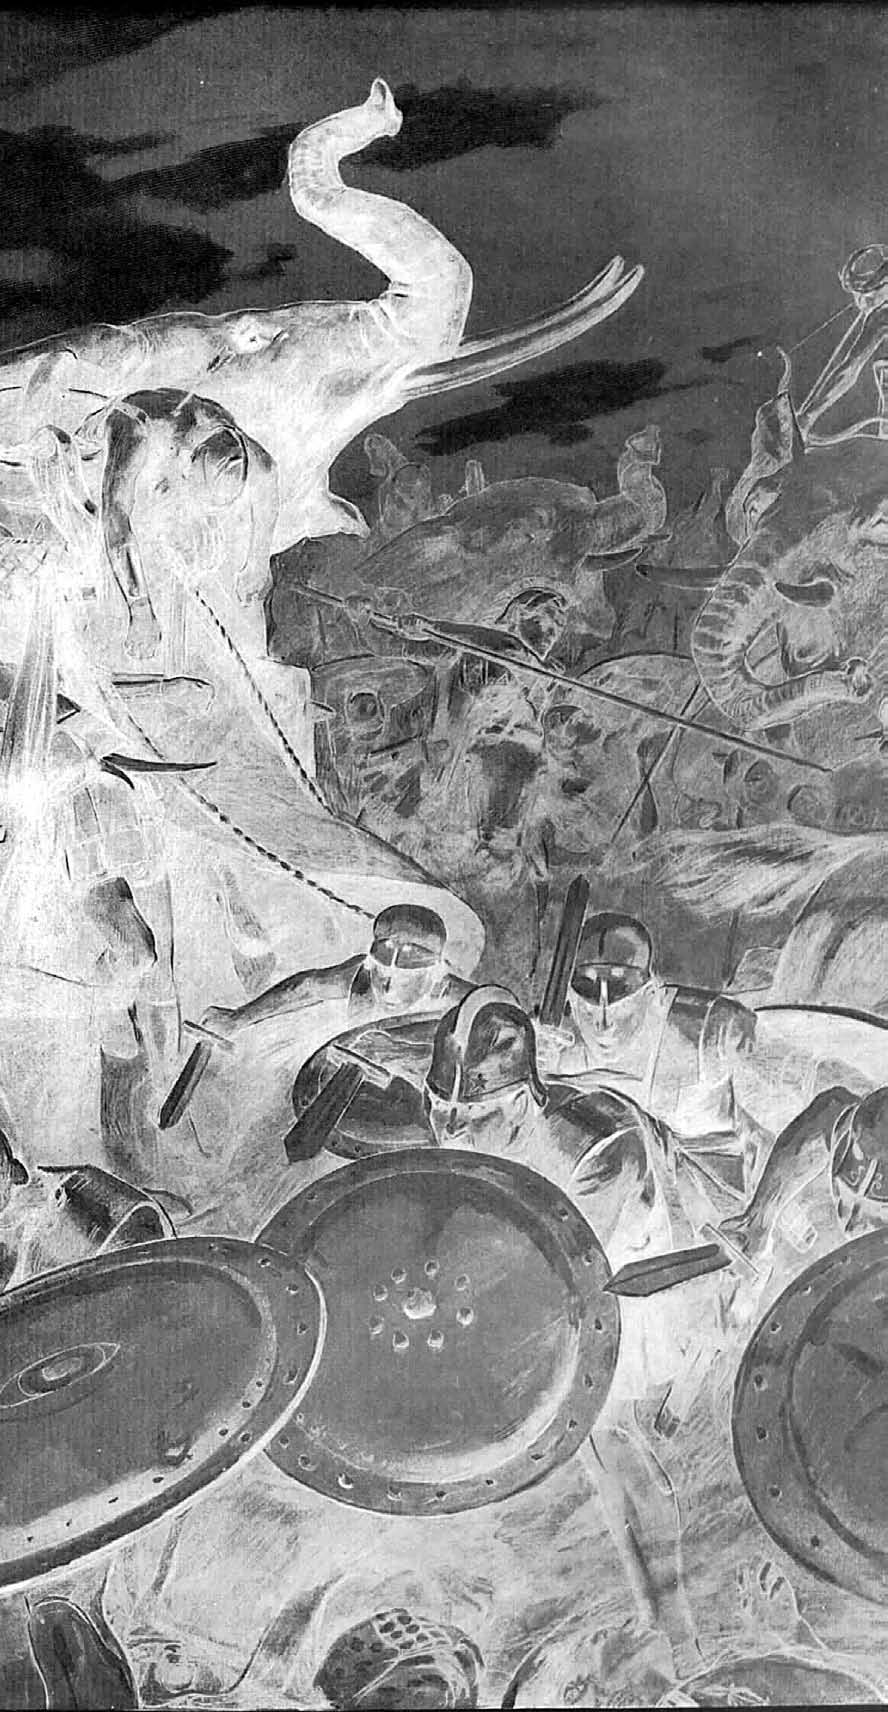 πολεµικη τεχνη Η κινεζική τεχνογνωσία Λέγεται ότι ο βοµβαρδισµός της κριµαϊκής πόλης Κάφα µε πτώµατα από τους Τατάρους το 1346 ήταν υπεύθυνος για το ξέσπασµα του «Μαύρου Θανάτου» στην Ευρώπη.